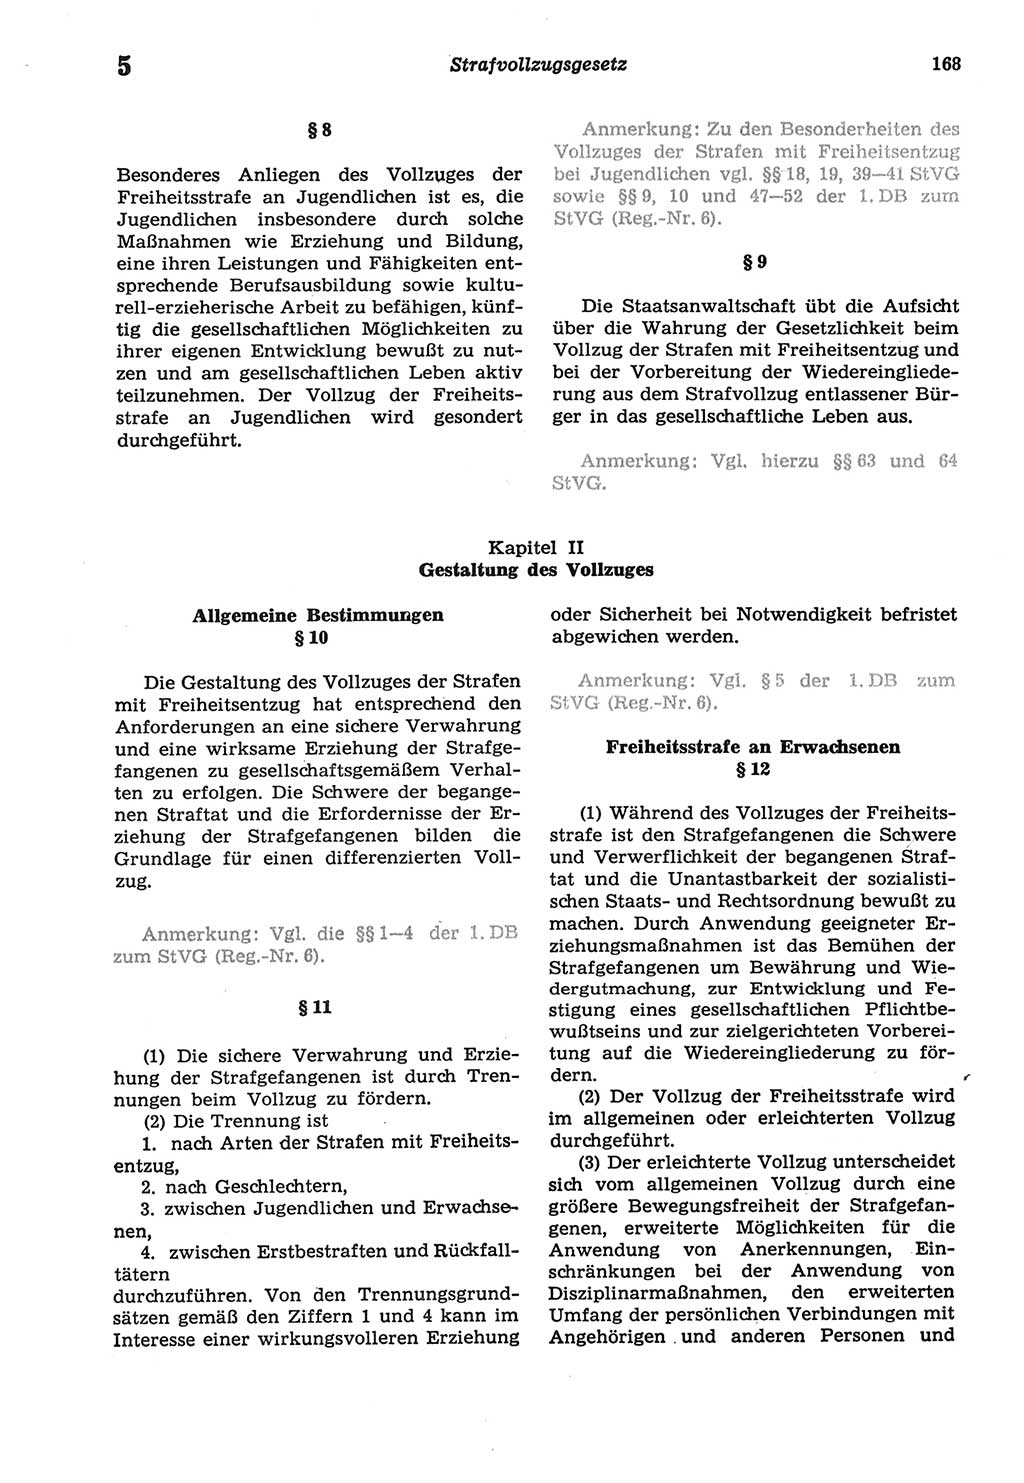 Strafprozeßordnung (StPO) der Deutschen Demokratischen Republik (DDR) sowie angrenzende Gesetze und Bestimmungen 1977, Seite 168 (StPO DDR Ges. Best. 1977, S. 168)